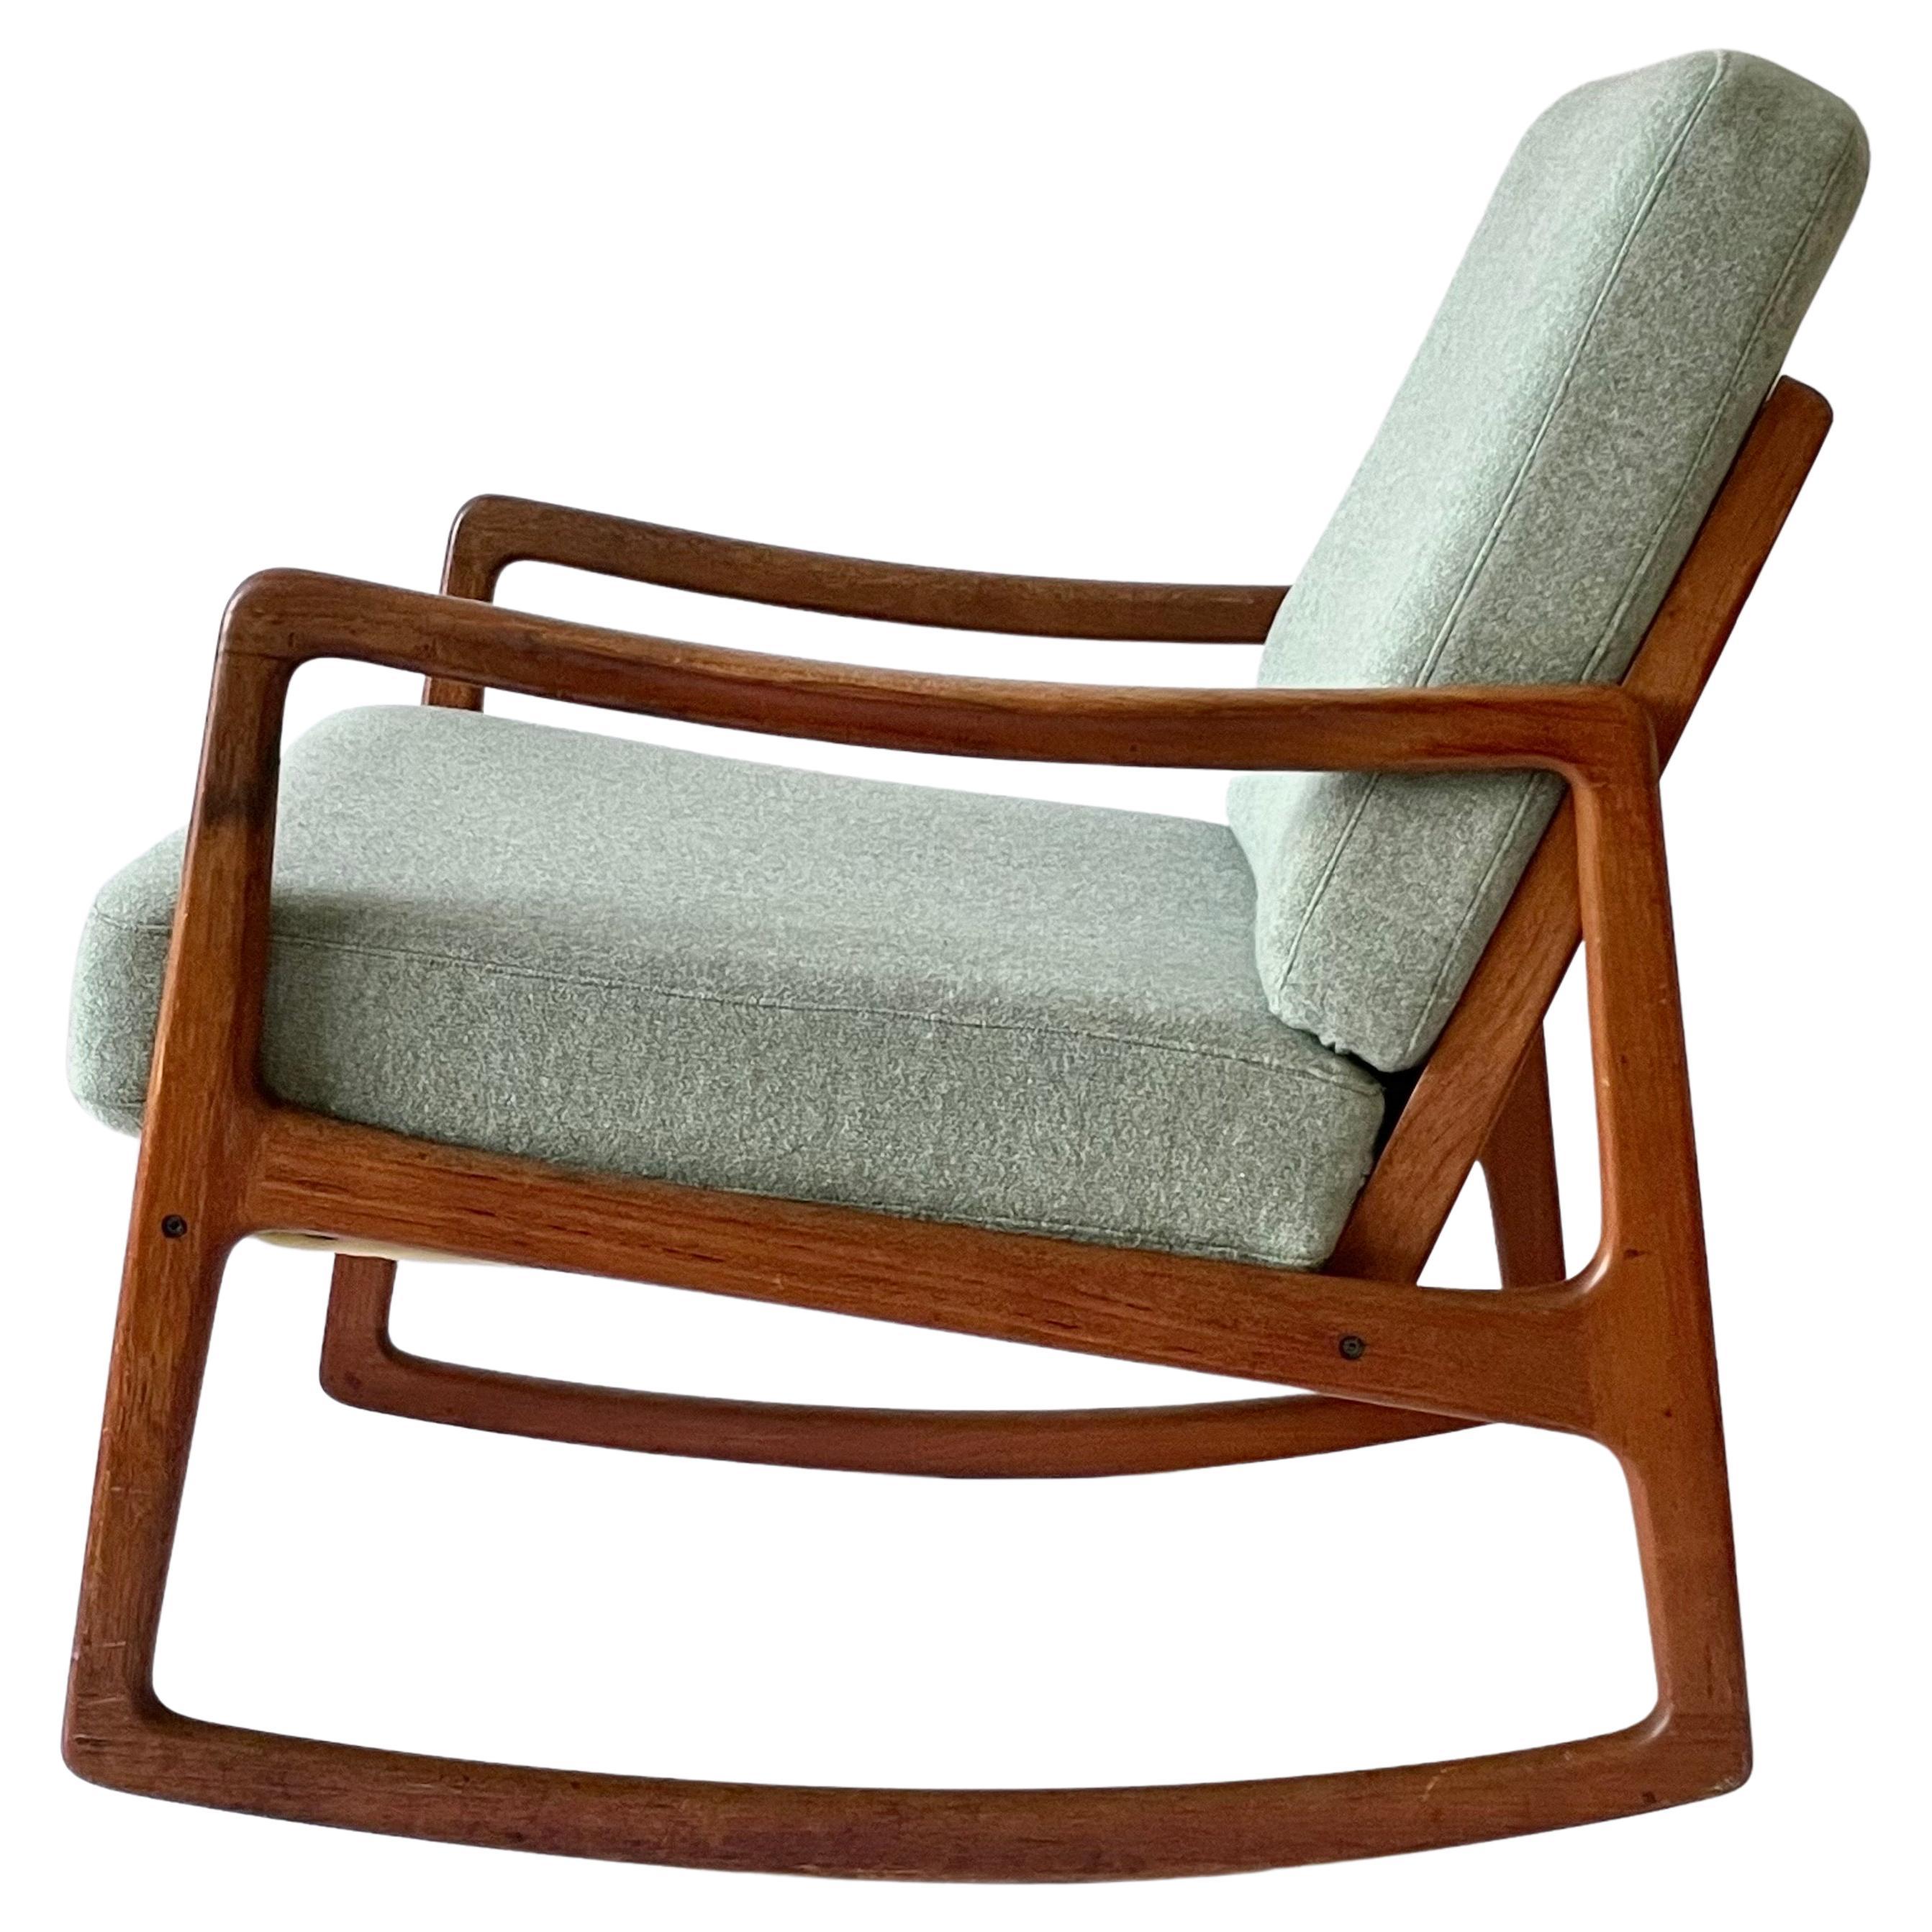 Rare fauteuil à bascule du milieu du siècle conçu par le professeur danois Ole Wanscher. Fabriqué au Danemark par France & Søn dans les années 1950. Il porte la marque du fabricant et présente un cadre solide en bois de teck avec un dossier ouvert